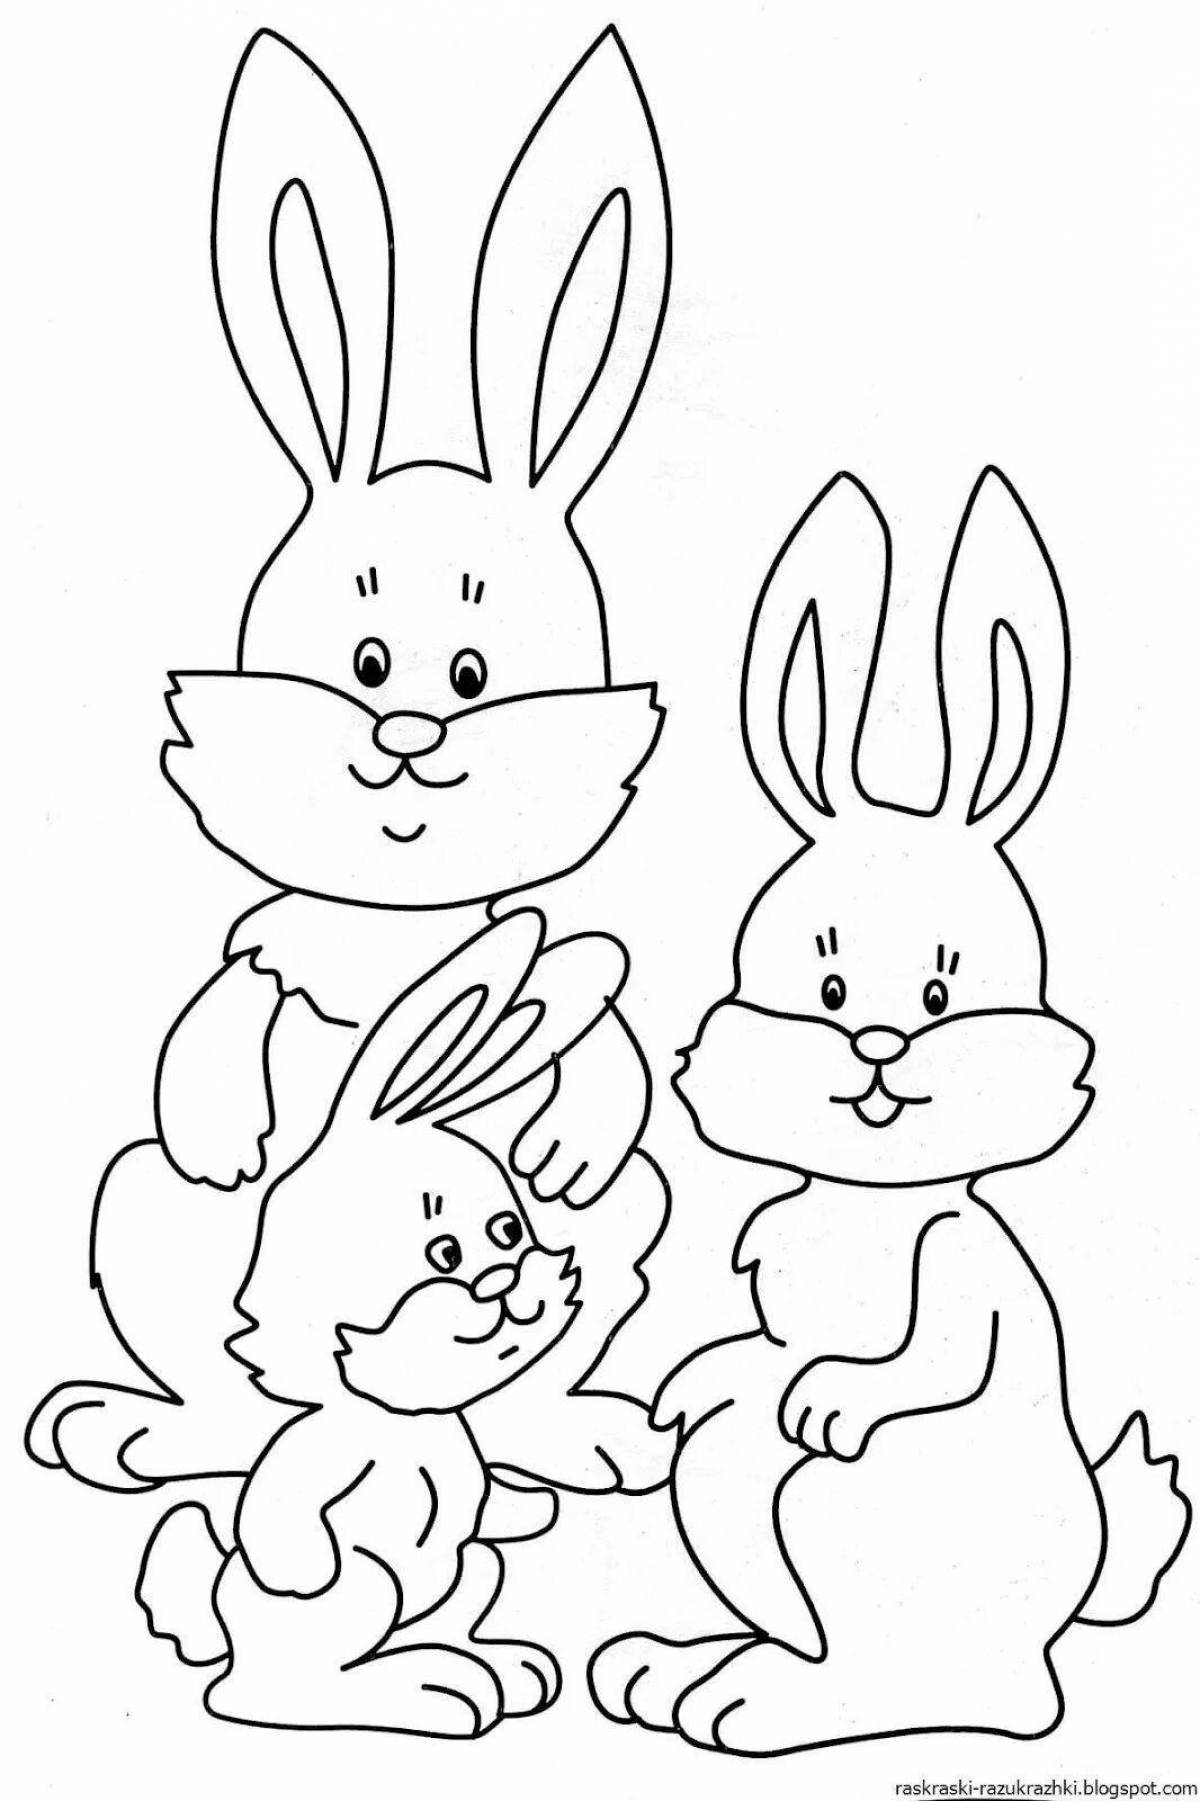 Веселый рисунок кролика для детей